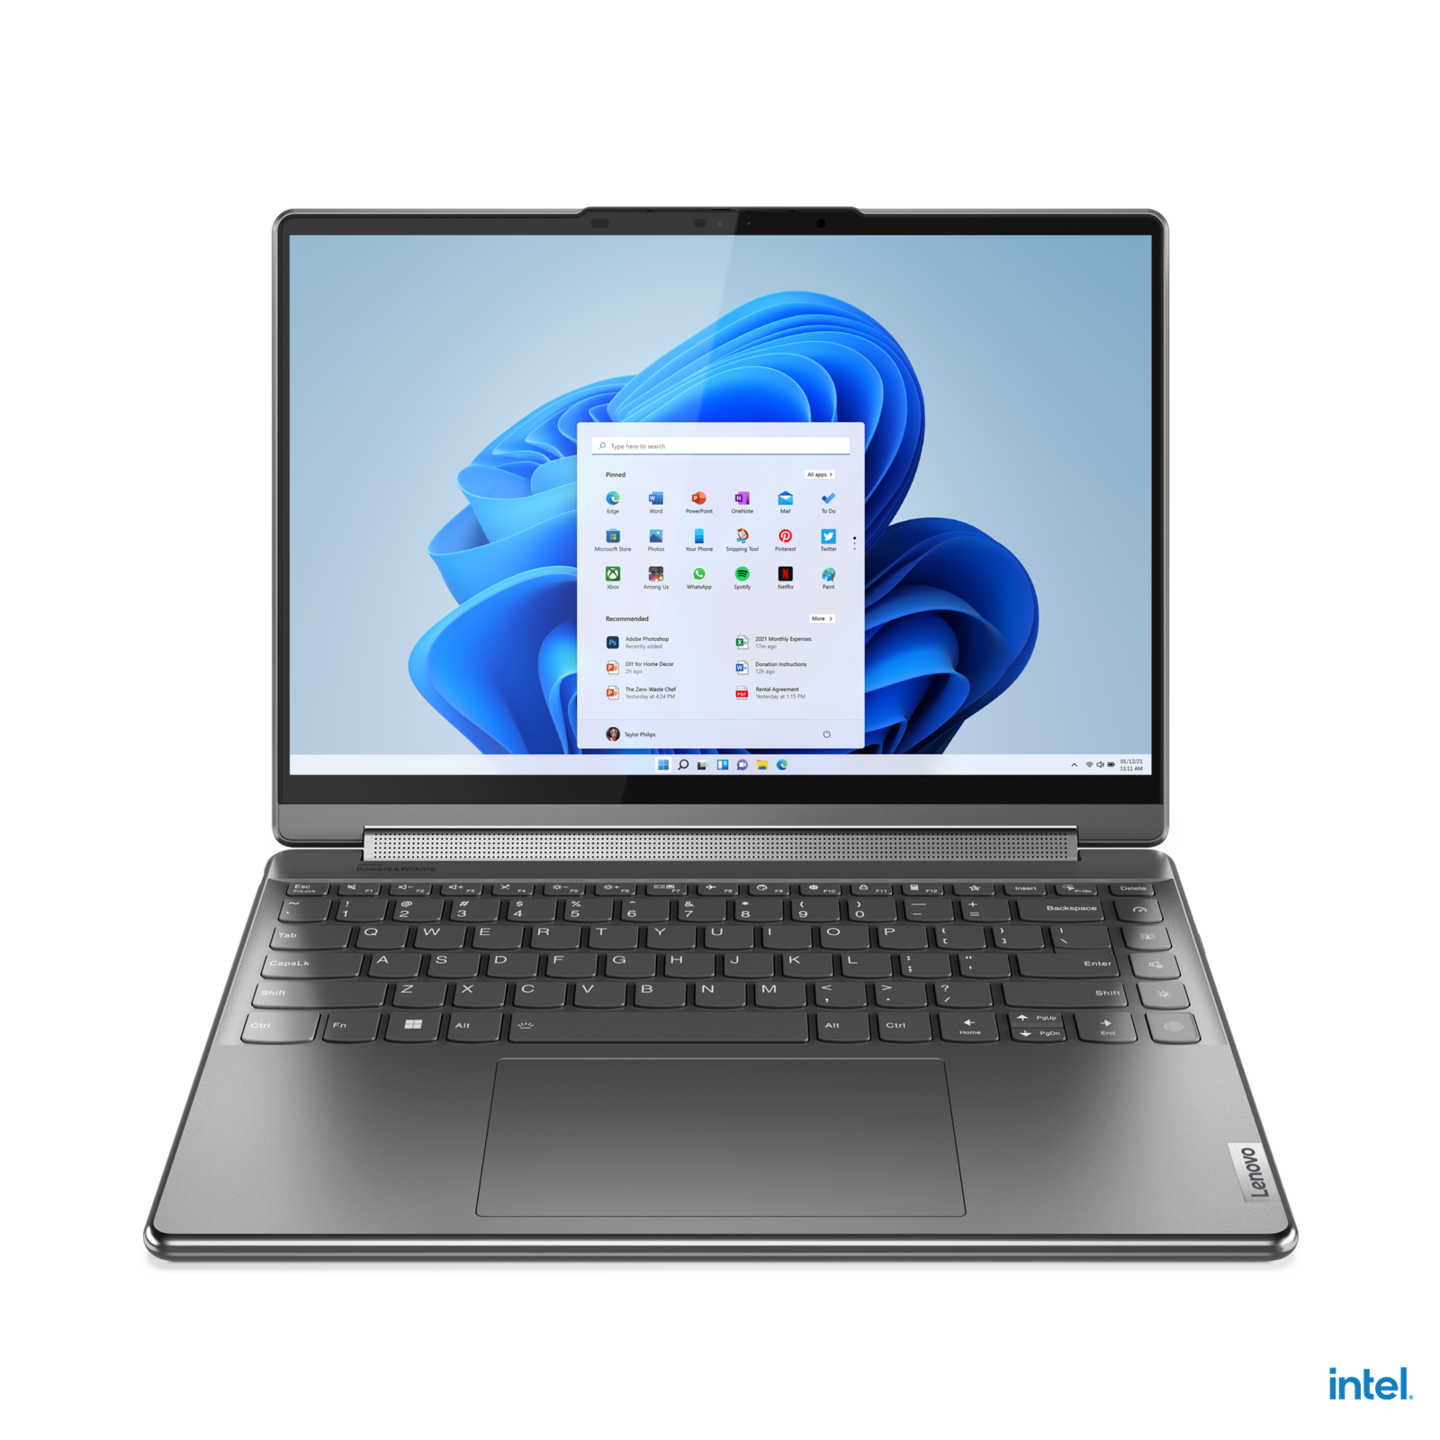 Lenovo Yoga 9i: Bạn đang tìm kiếm một chiếc laptop đẳng cấp với thiết kế sang trọng và tính năng đa dạng? Lenovo Yoga 9i là sự lựa chọn hoàn hảo cho bạn. Bạn sẽ được khám phá những cải tiến đột phá về hình thức và chất lượng hiển thị của sản phẩm. Hãy xem ảnh sản phẩm để có cái nhìn rõ nét hơn nhé!